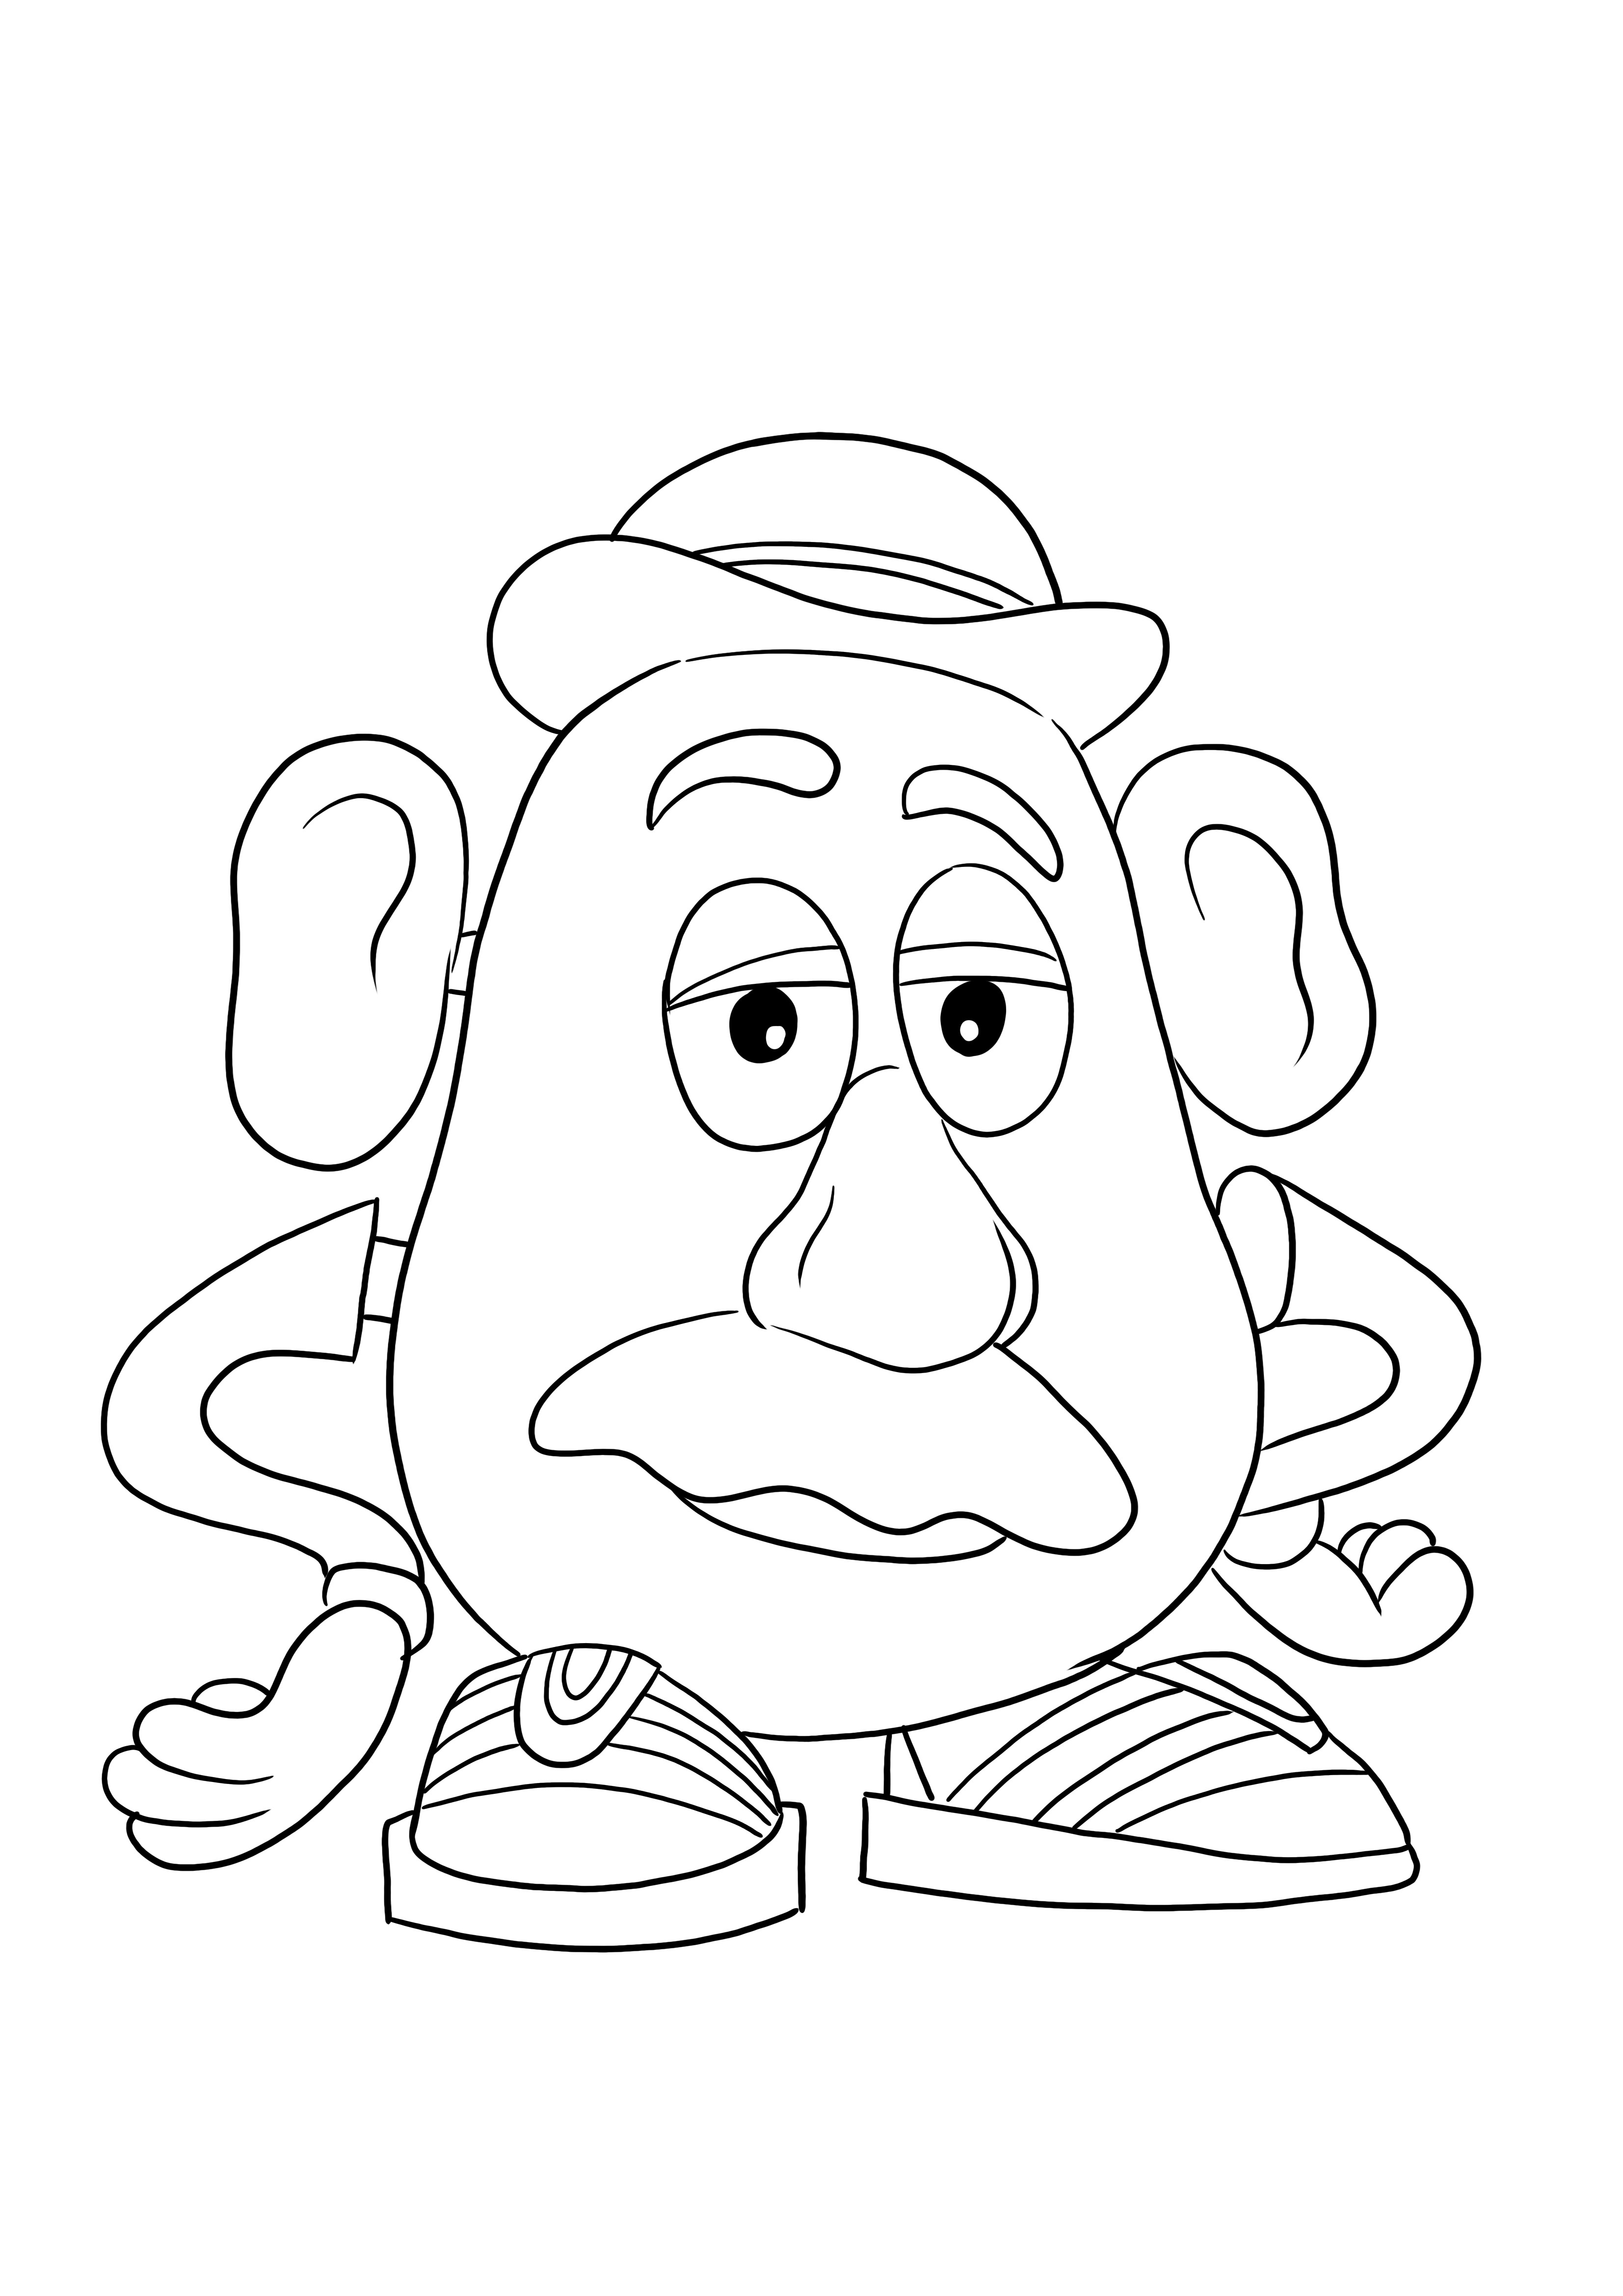 Mister Potato Head scarica gratuitamente l'immagine che i bambini possono colorare facilmente